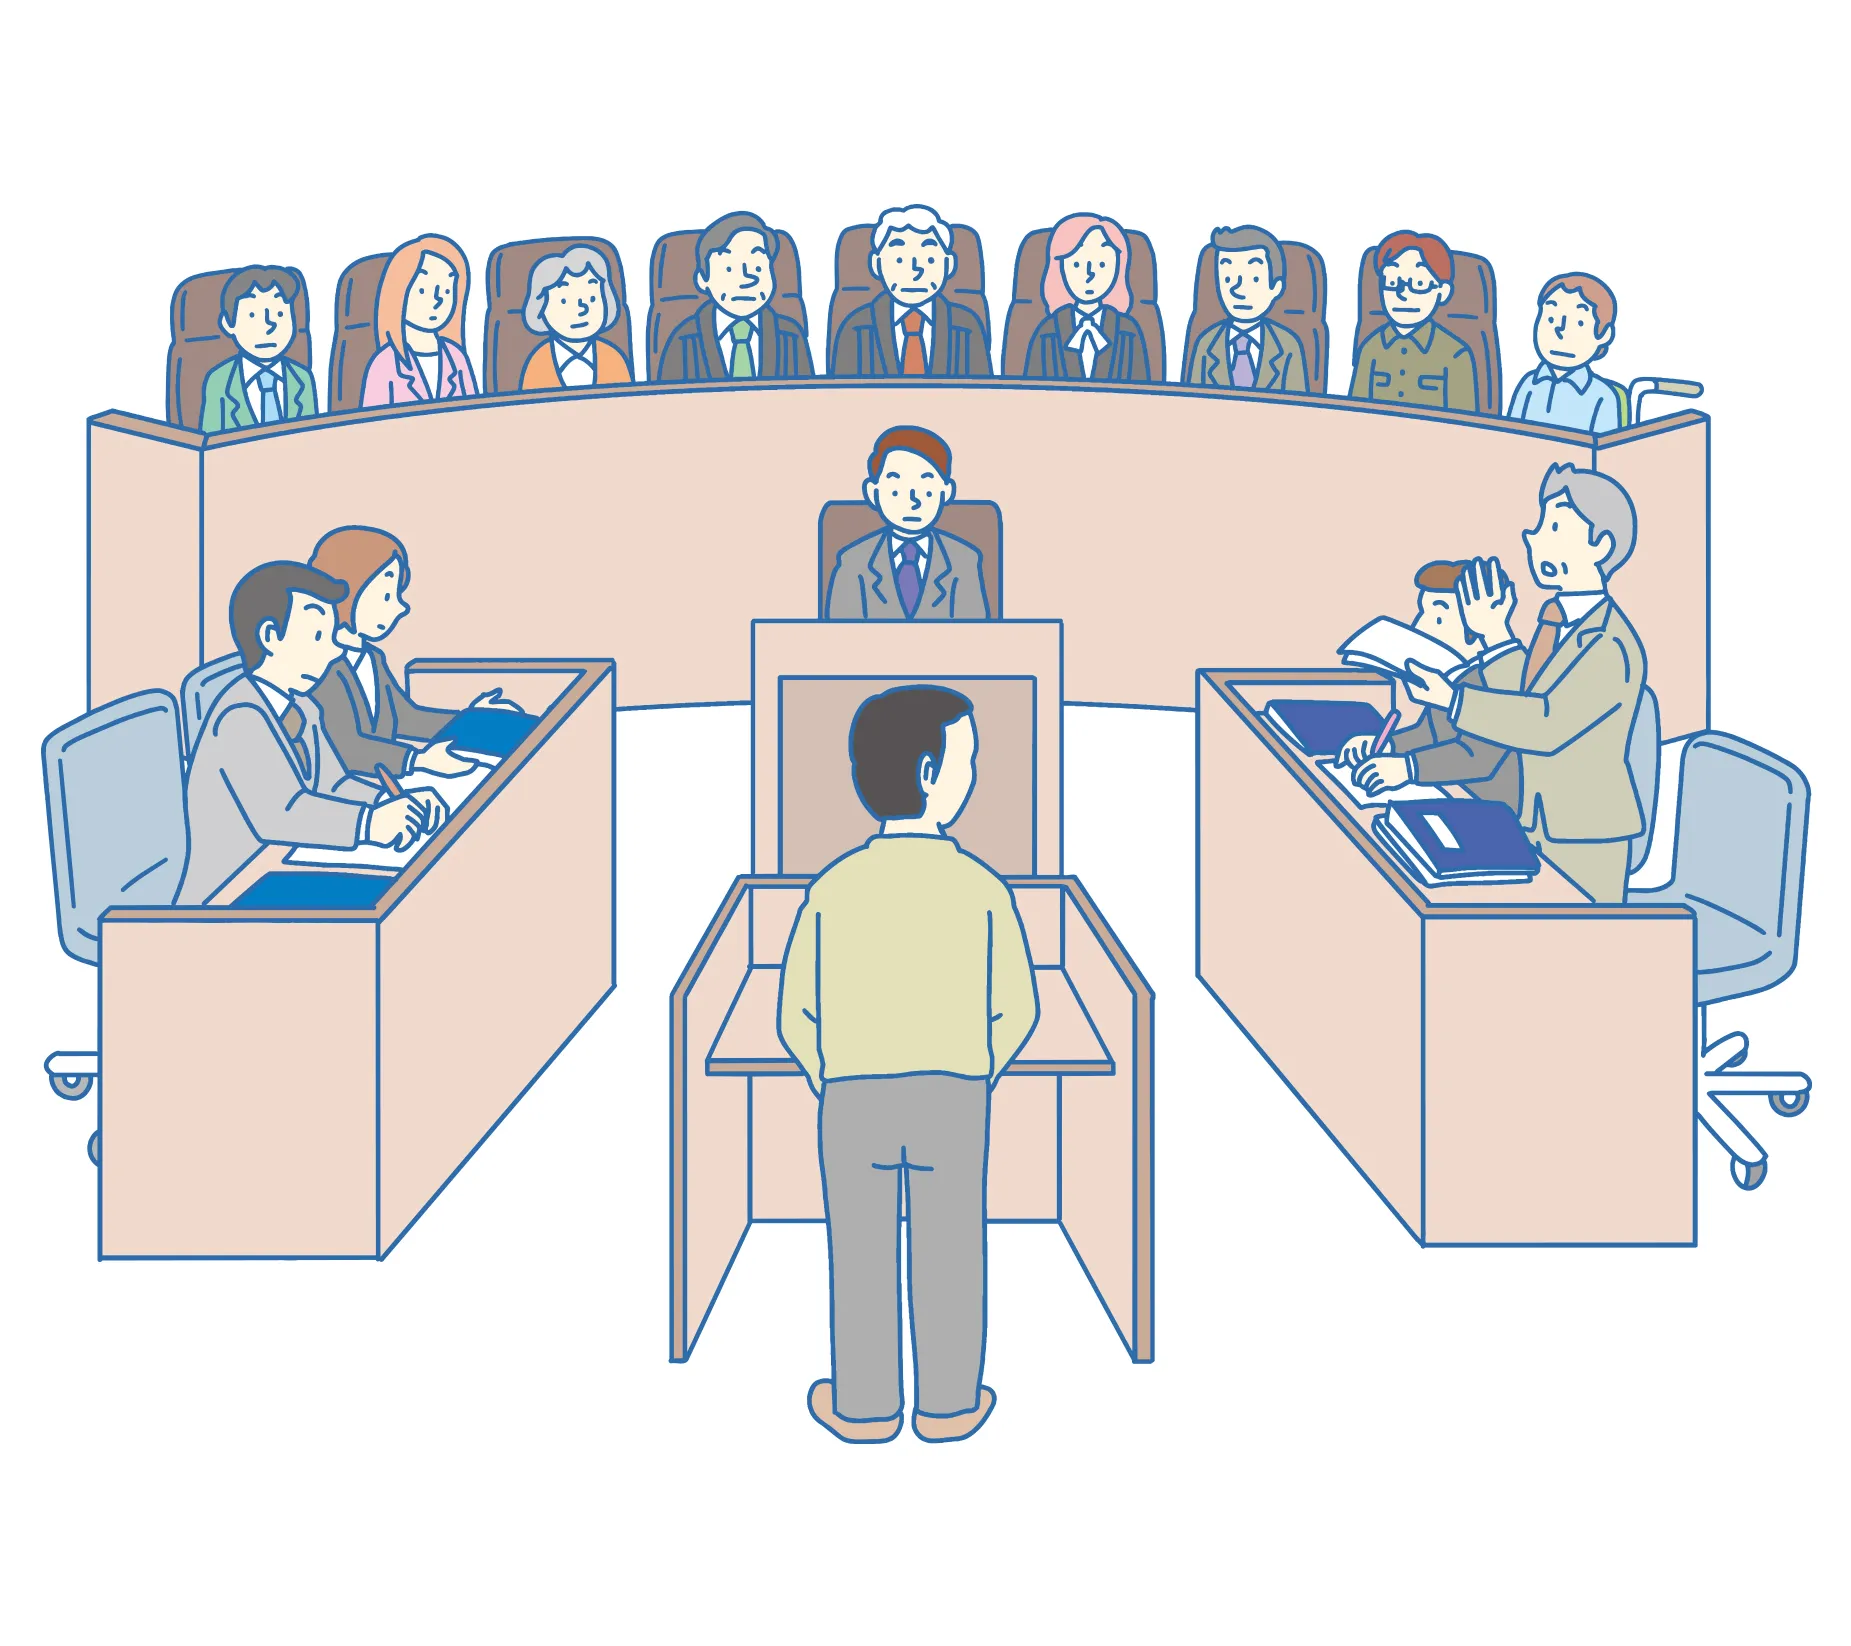 裁判員裁判のイメージ。裁判員、裁判官、書記官、検察官、弁護人、被告人が法廷に集まっている。